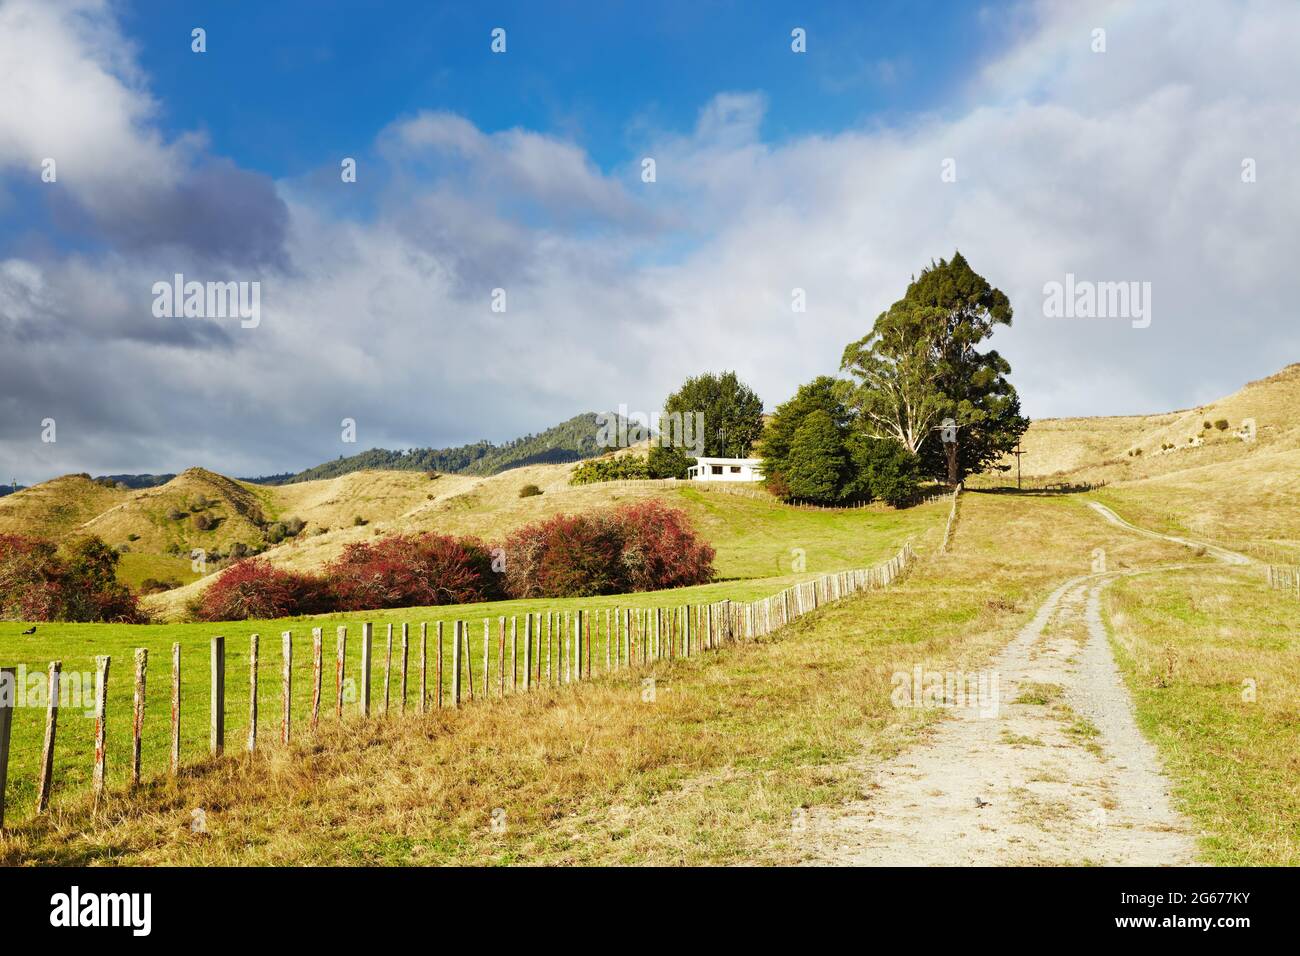 Paesaggio rurale con strada sterrata e cielo nuvoloso in Nuova Zelanda Foto Stock